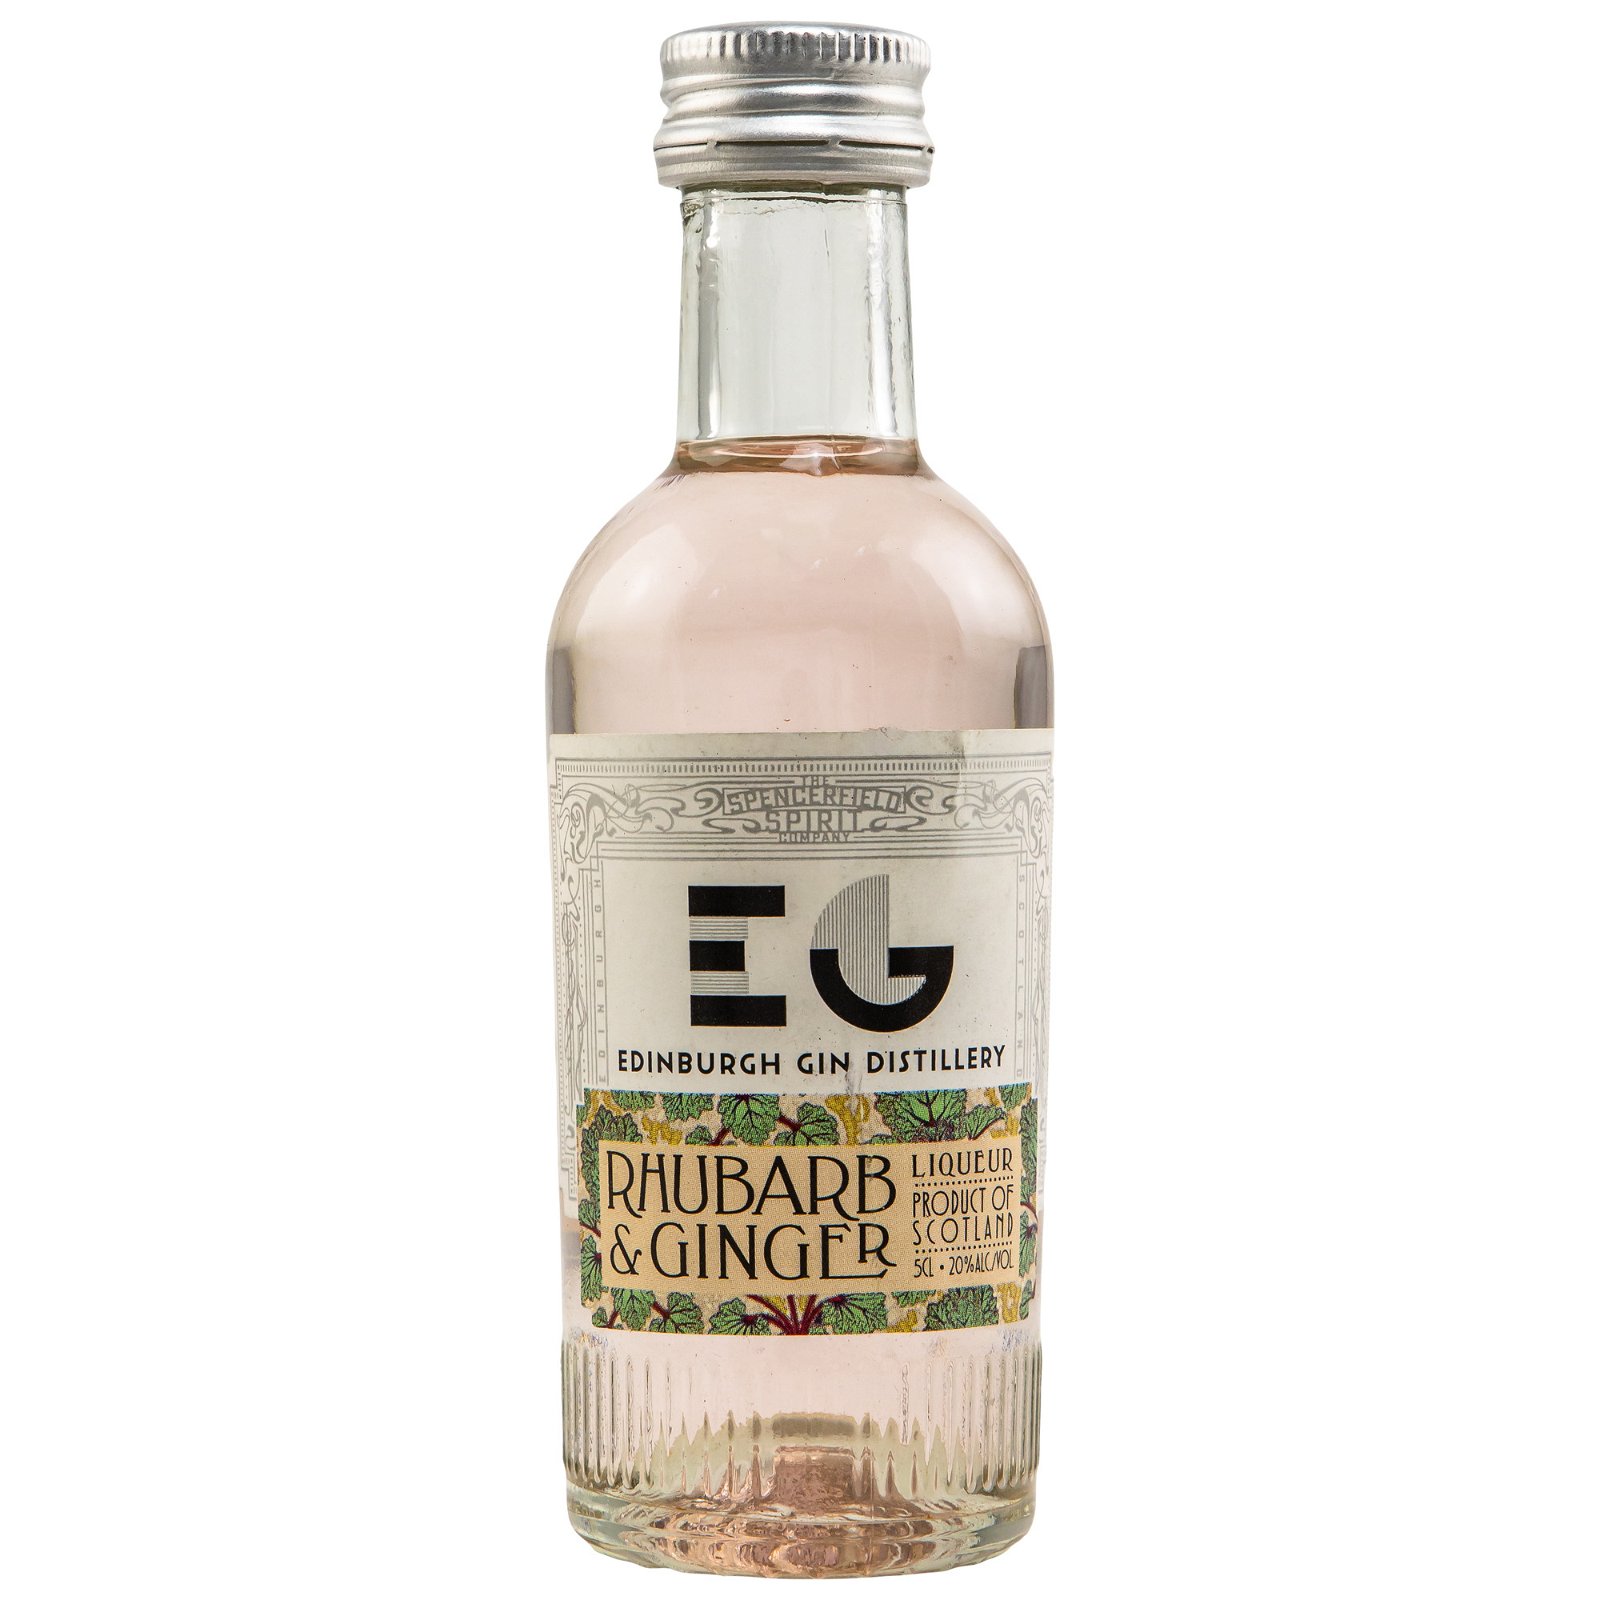 Edinburgh Gin Rhubarb & Ginger Liqueur (Miniatur)